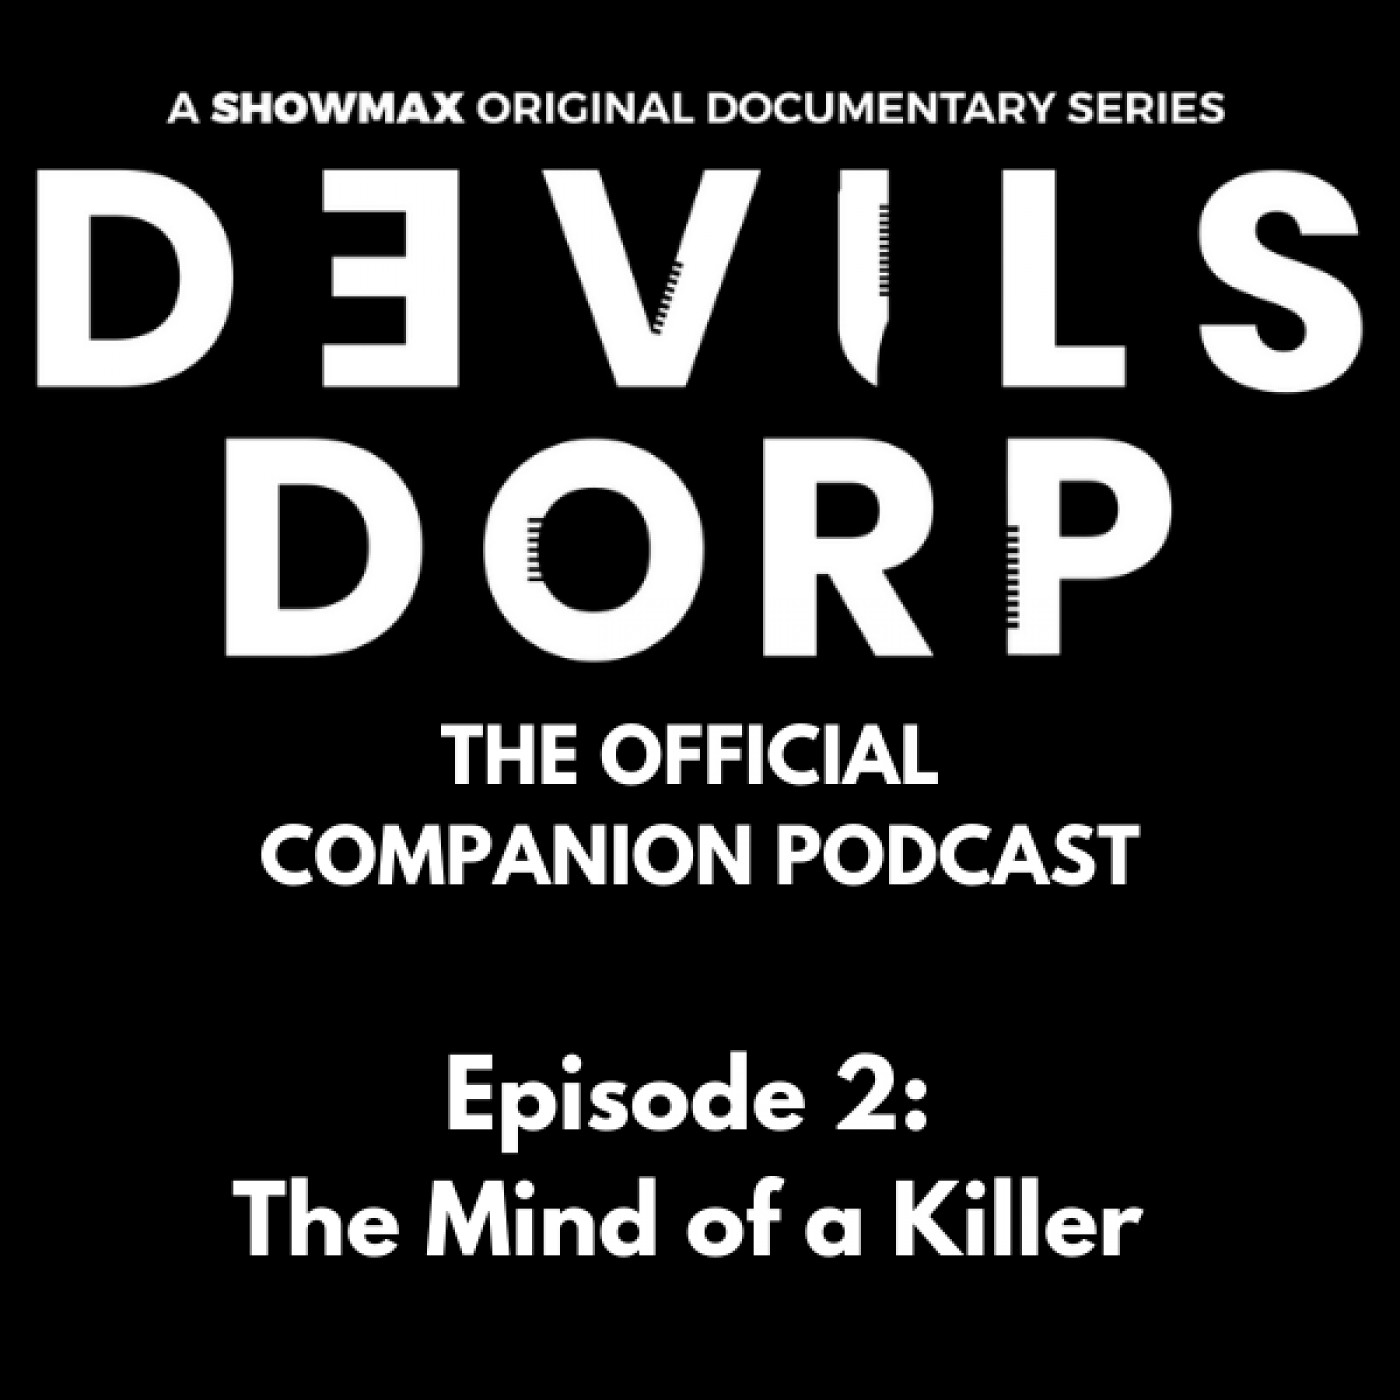 Episode 2: The Mind of a Killer